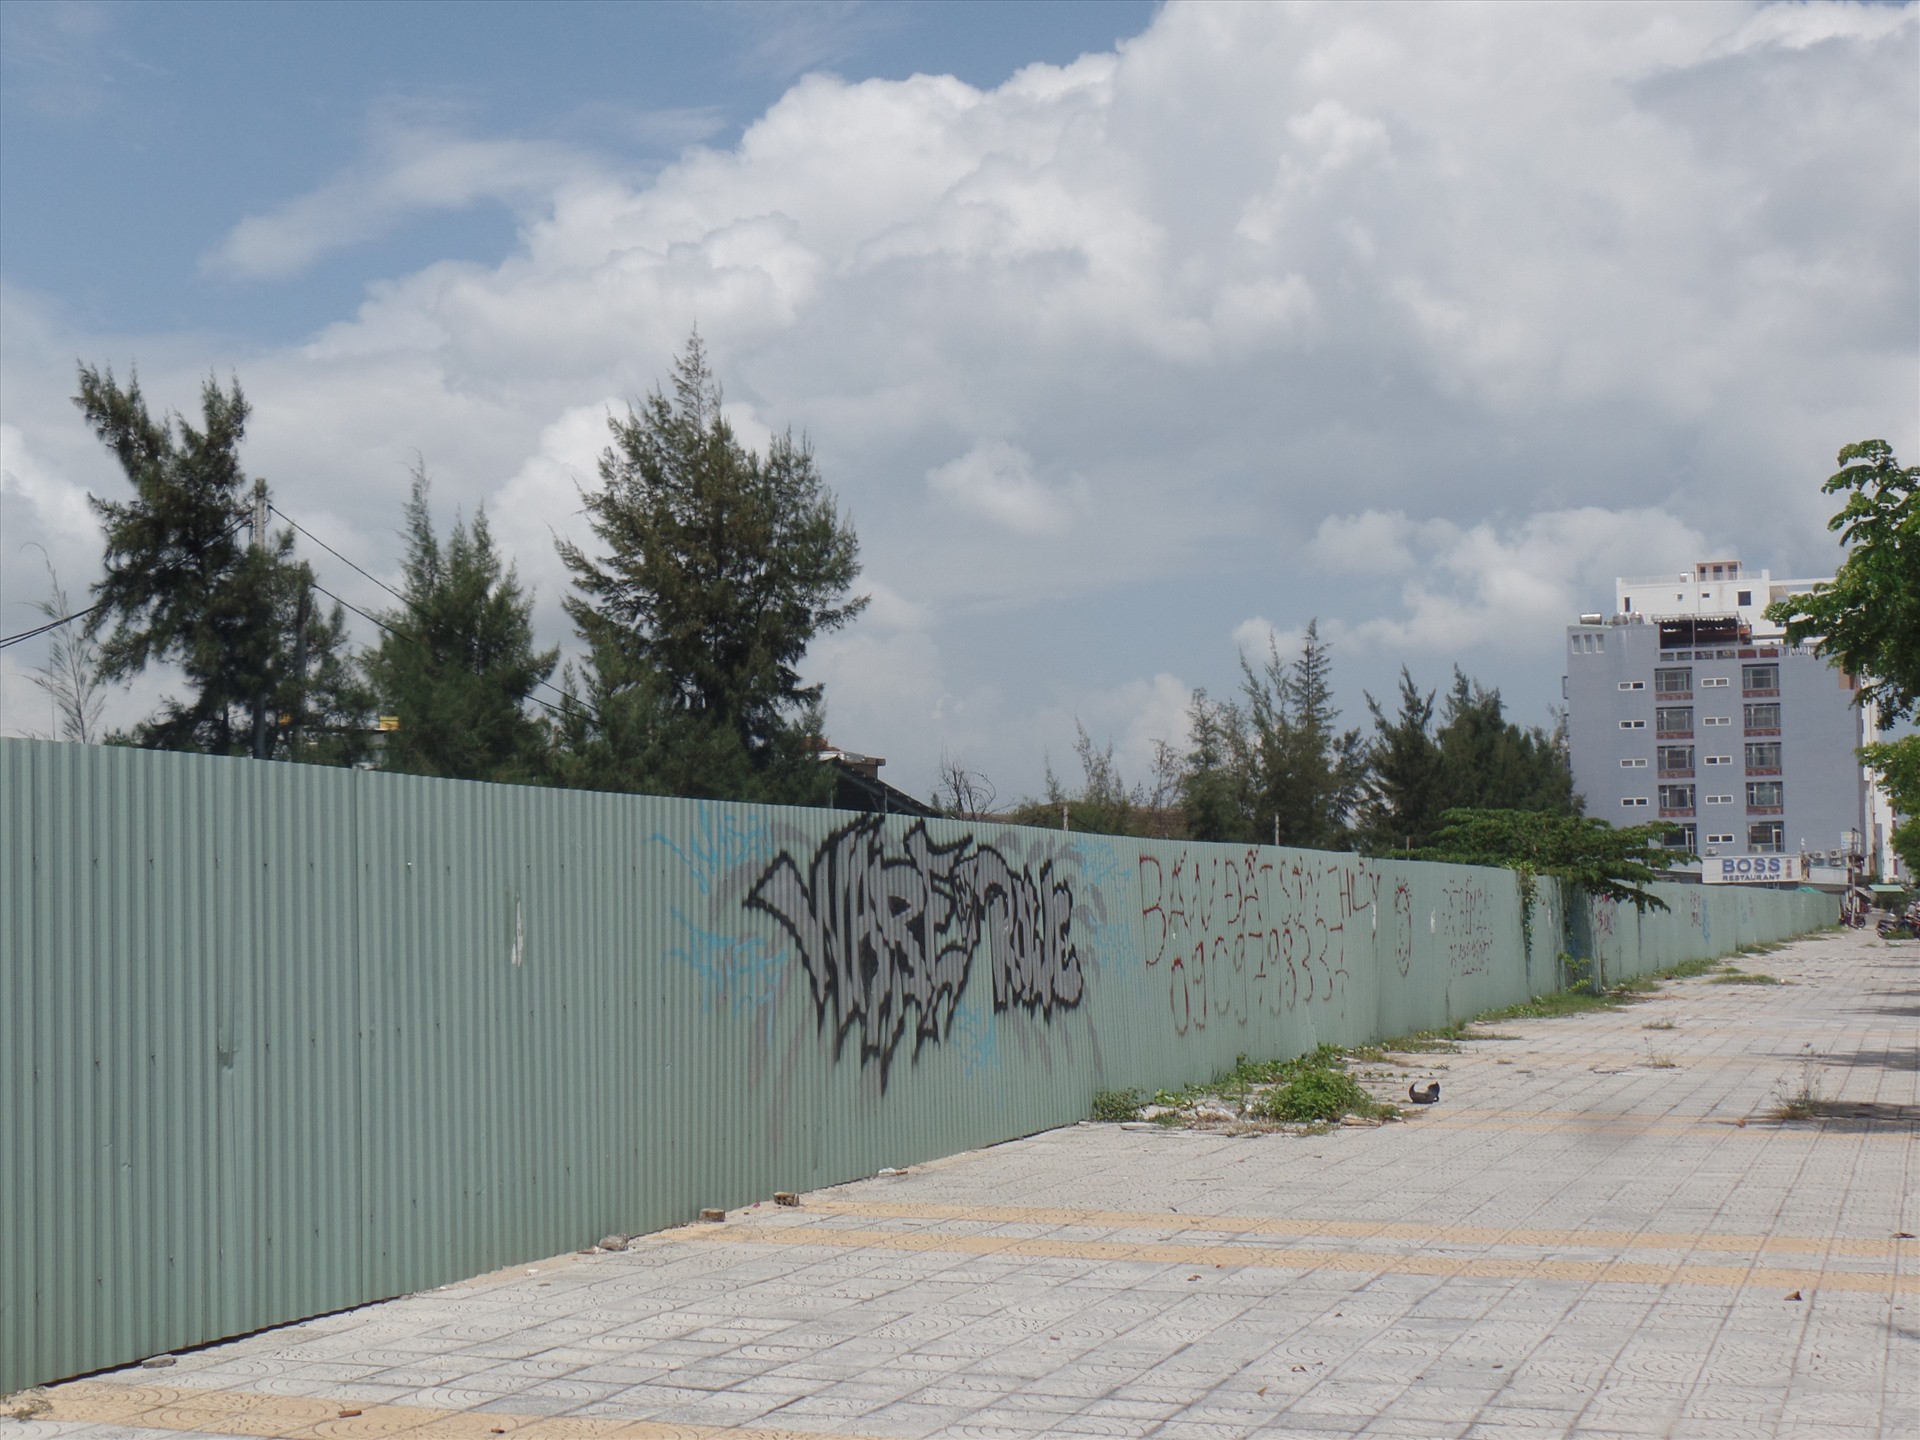 Khu đất vệt tường rào sân bay Nước Mặn, nơi được xác định có nhiều lô đất do người Trung Quốc núp bóng người Việt để sở hữu. Ảnh: Hoàng Sơn